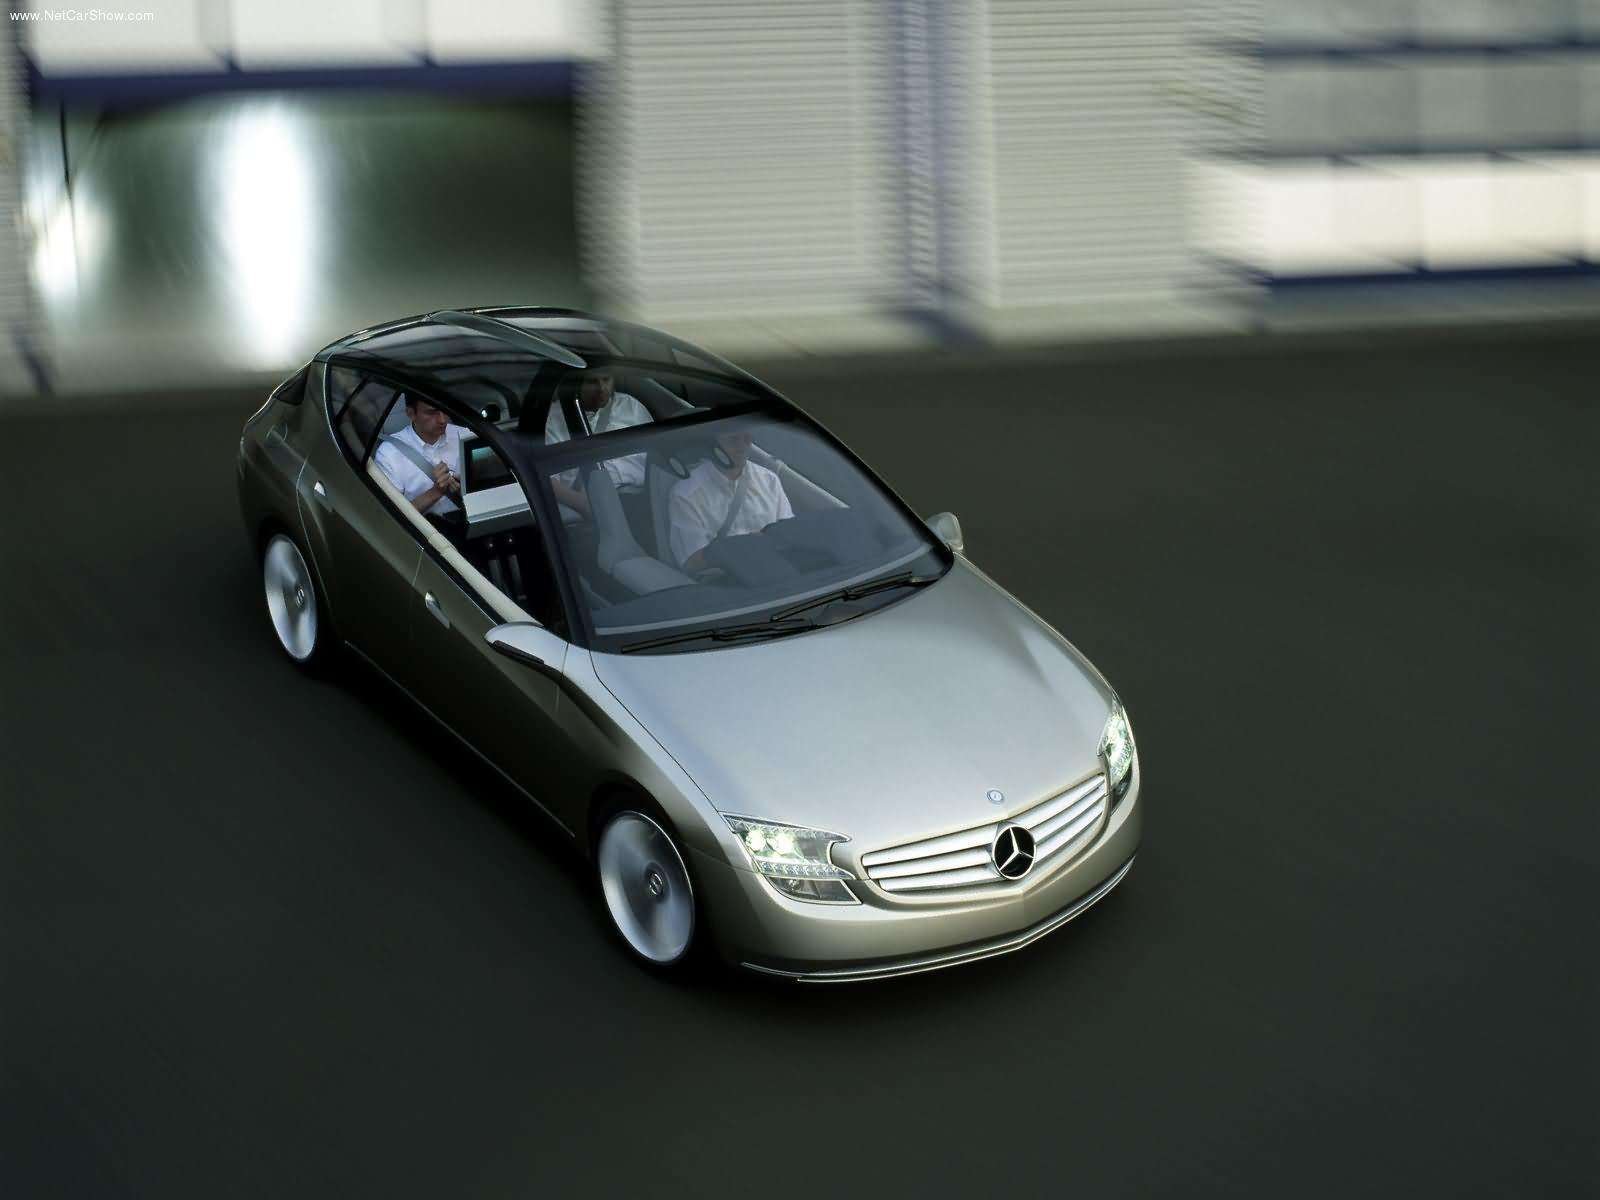 mercedes, Benz, F500, Mind, Concept, Cars, 2003 Wallpaper